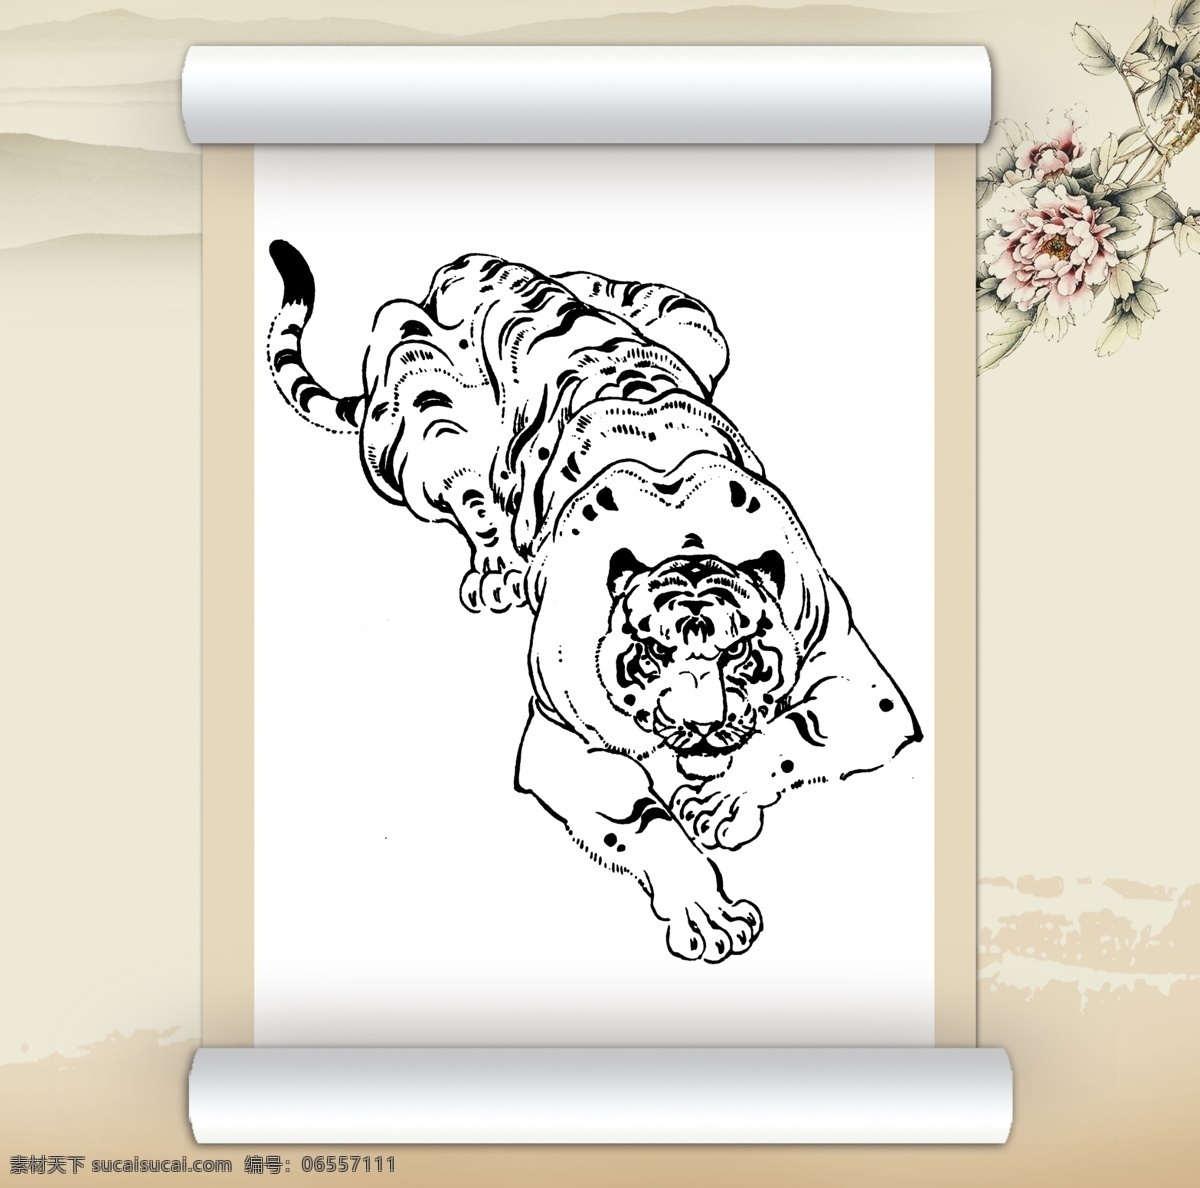 中国 风 老虎 绘画 白描 动物 工笔 绘画书法 卷轴 美术 设计图库 文化艺术 线描 中国水墨 走兽 百兽 家居装饰素材 室内装饰用图